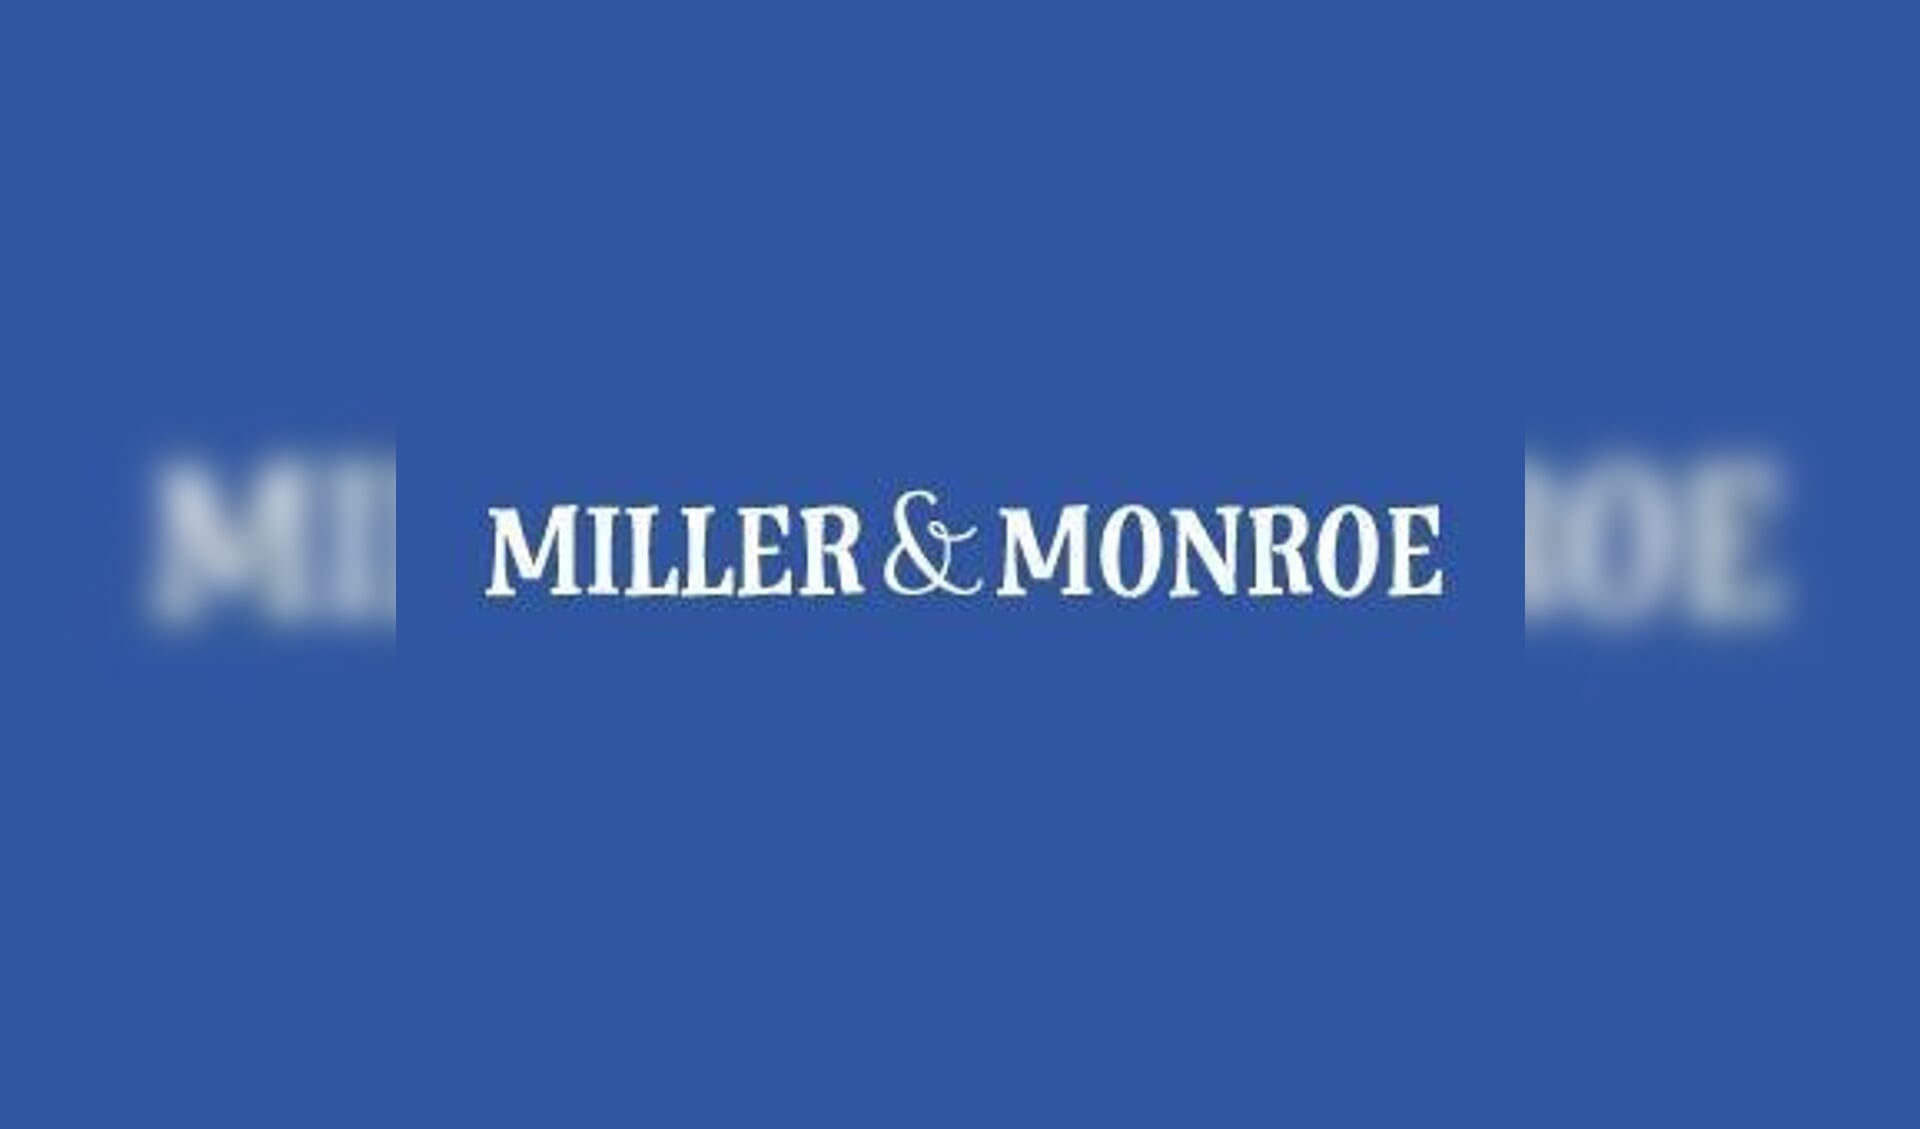 Miller & Monroe in Oss gaat dicht